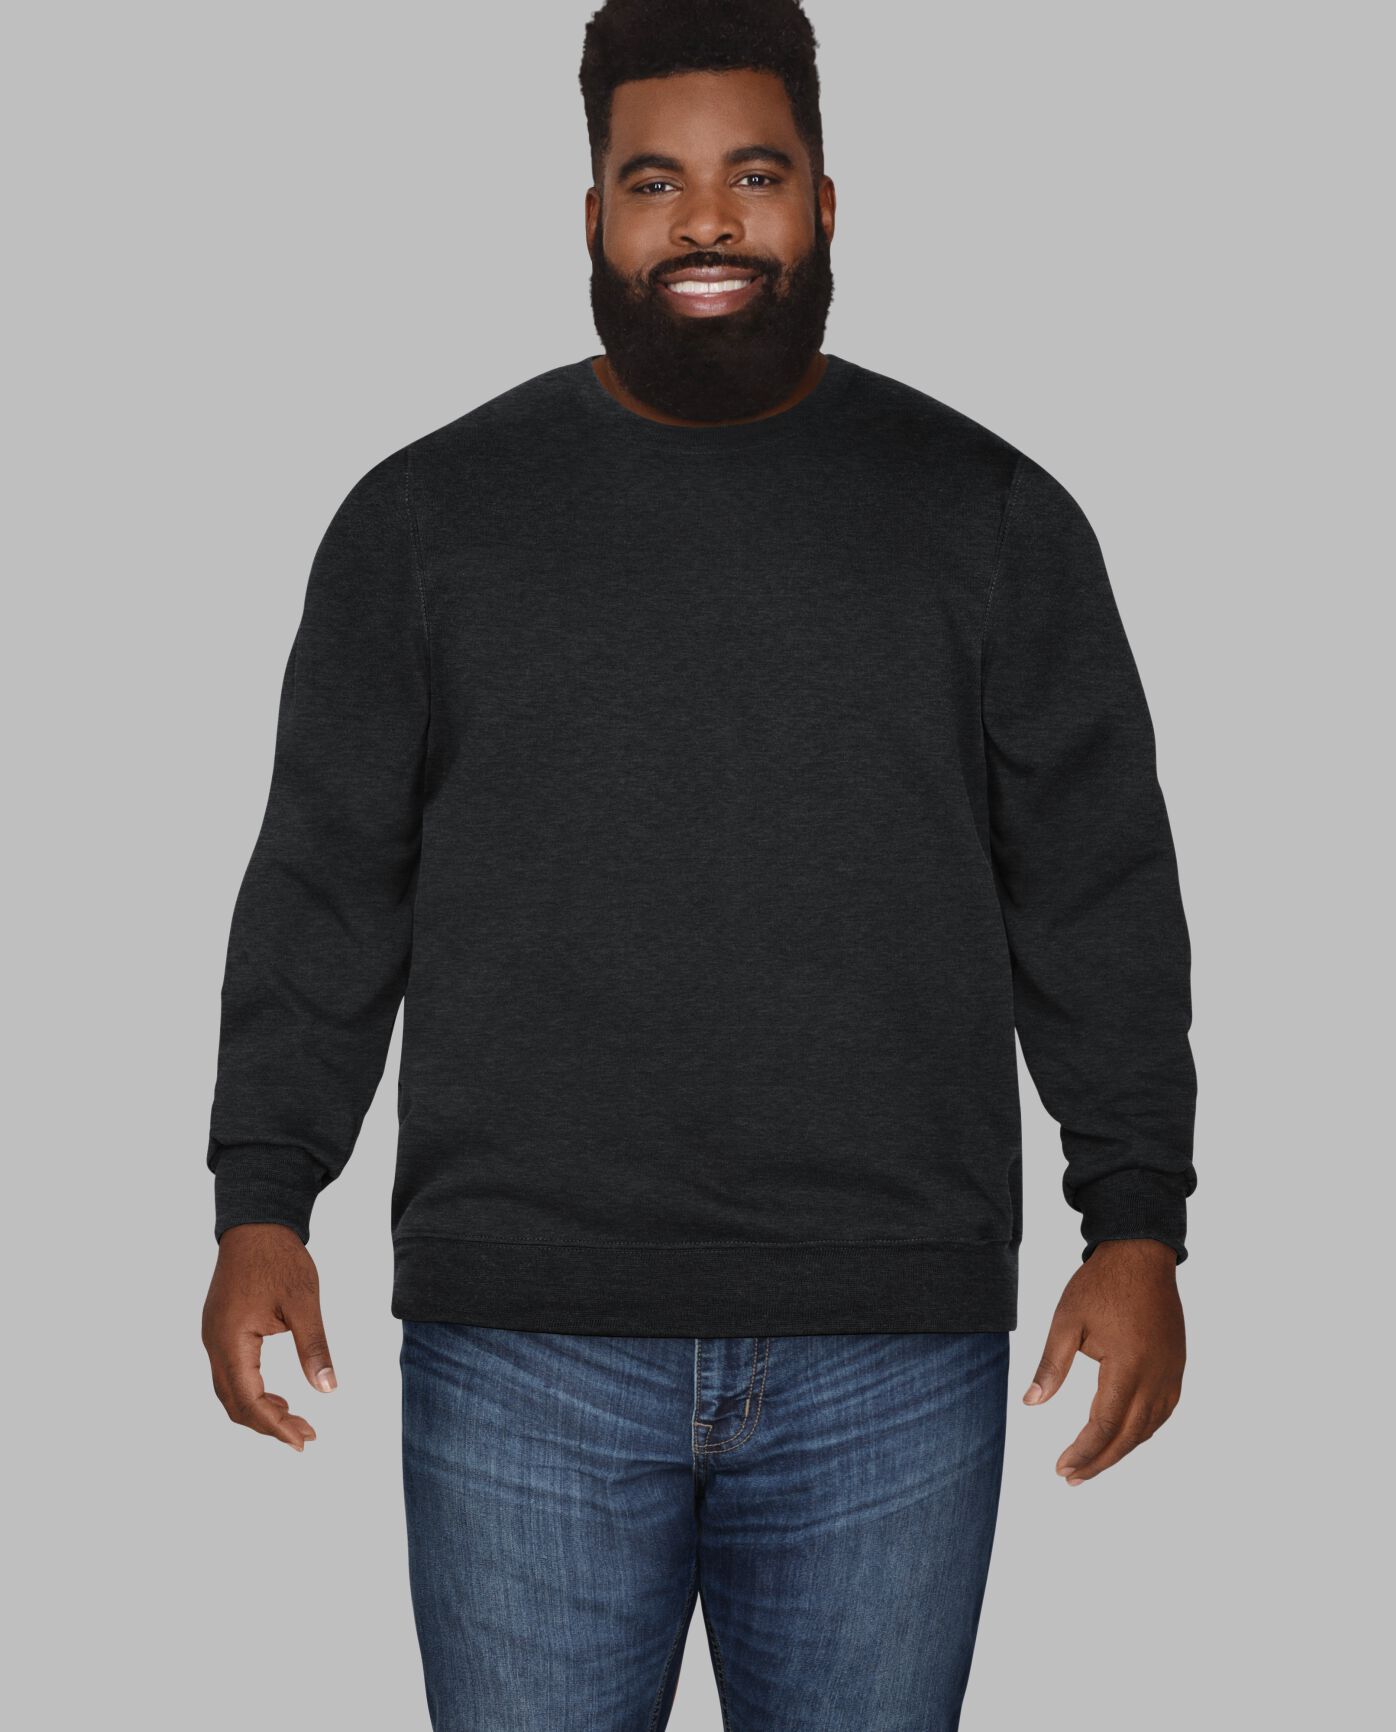 Big Men's Eversoft® Fleece Crew Sweatshirt Black Heather